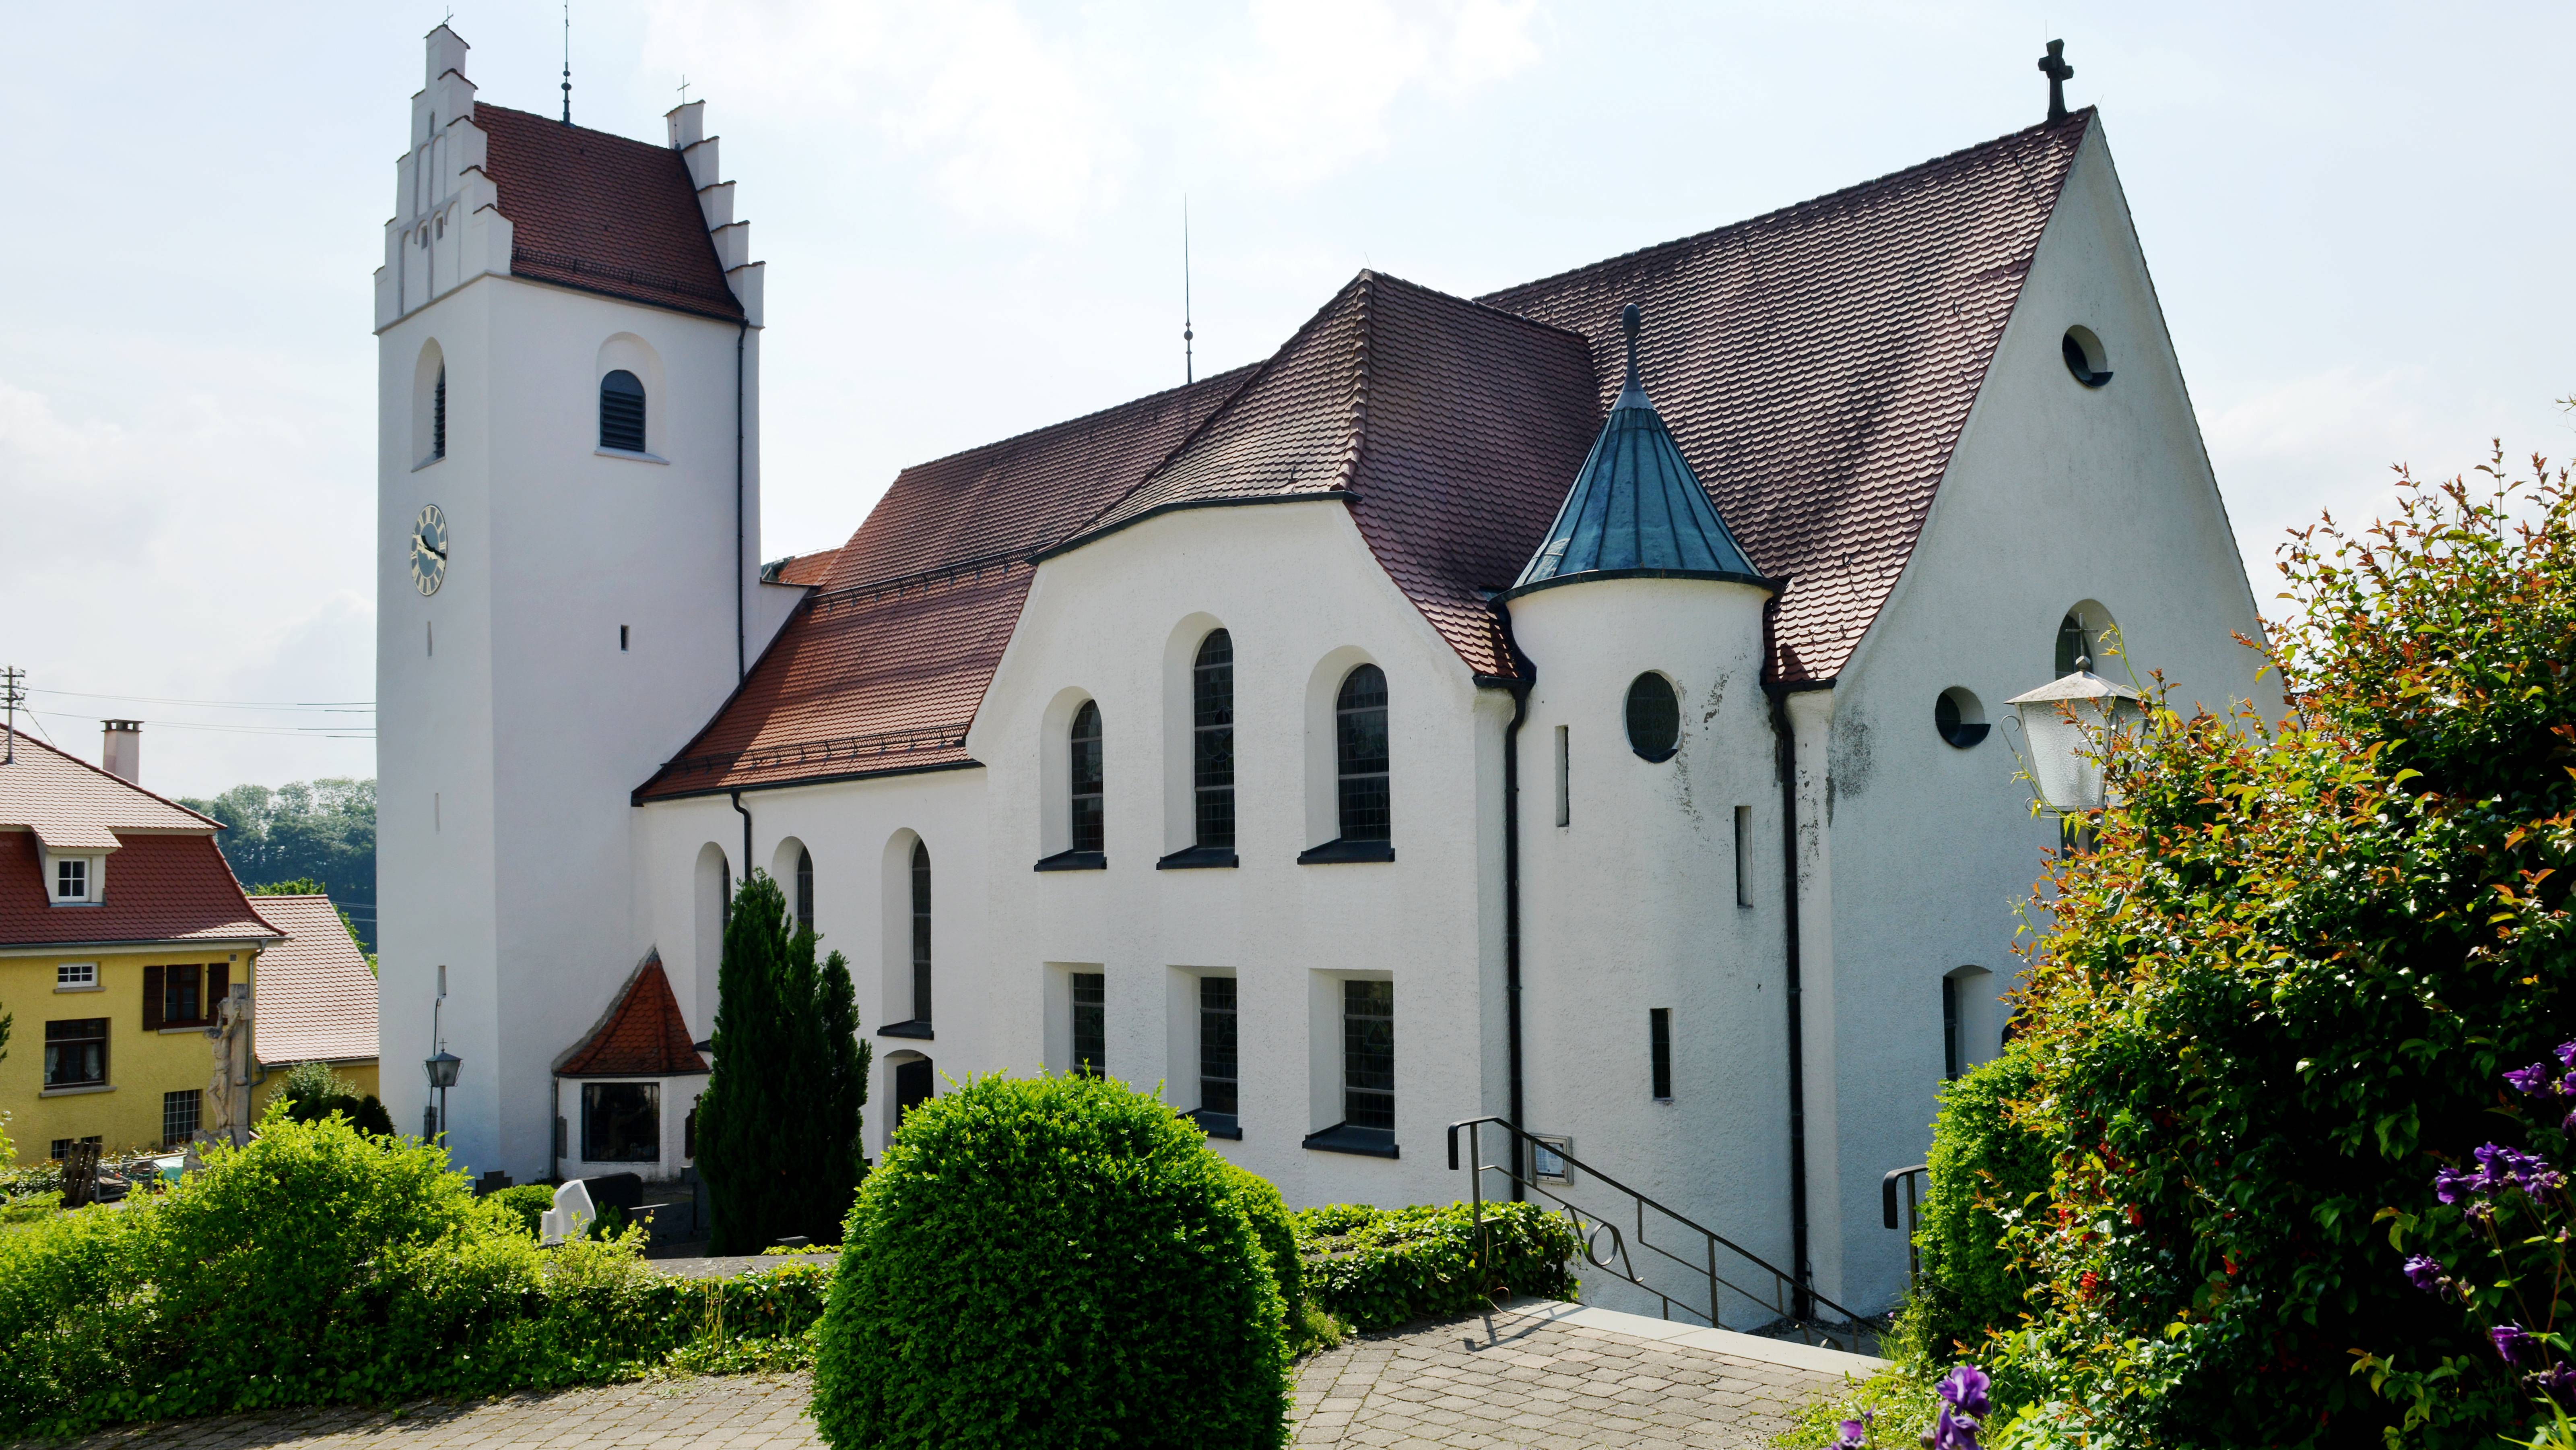 
    
            
                    Katholische Kirche St. Konrad in Fronhofen
                
        
